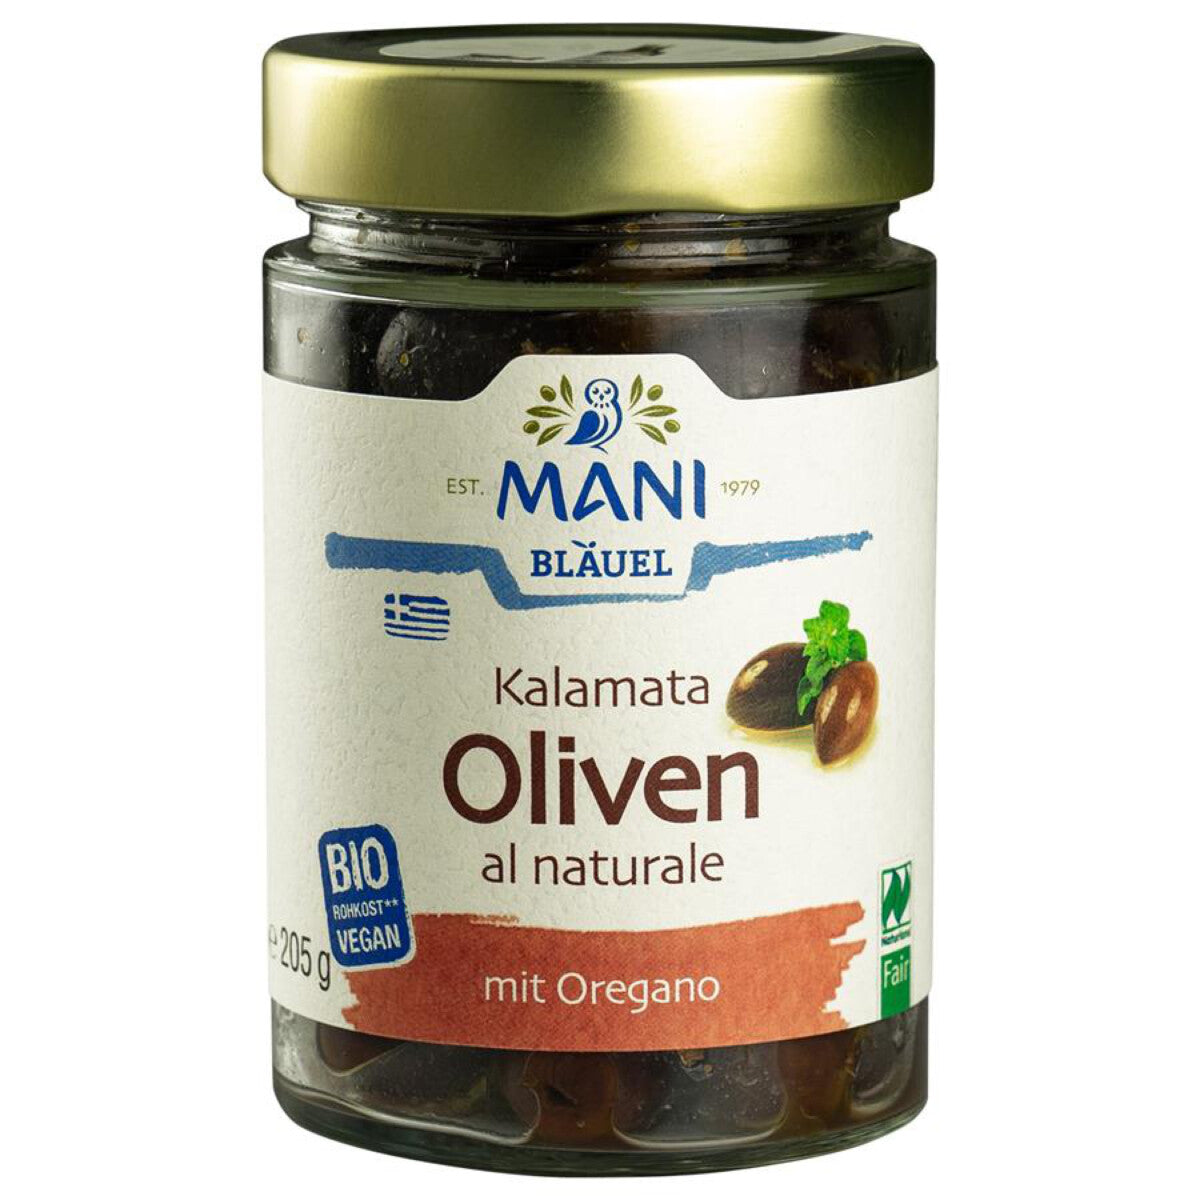 MANI BLÄUEL Kalamata Oliven al naturale - 205 g